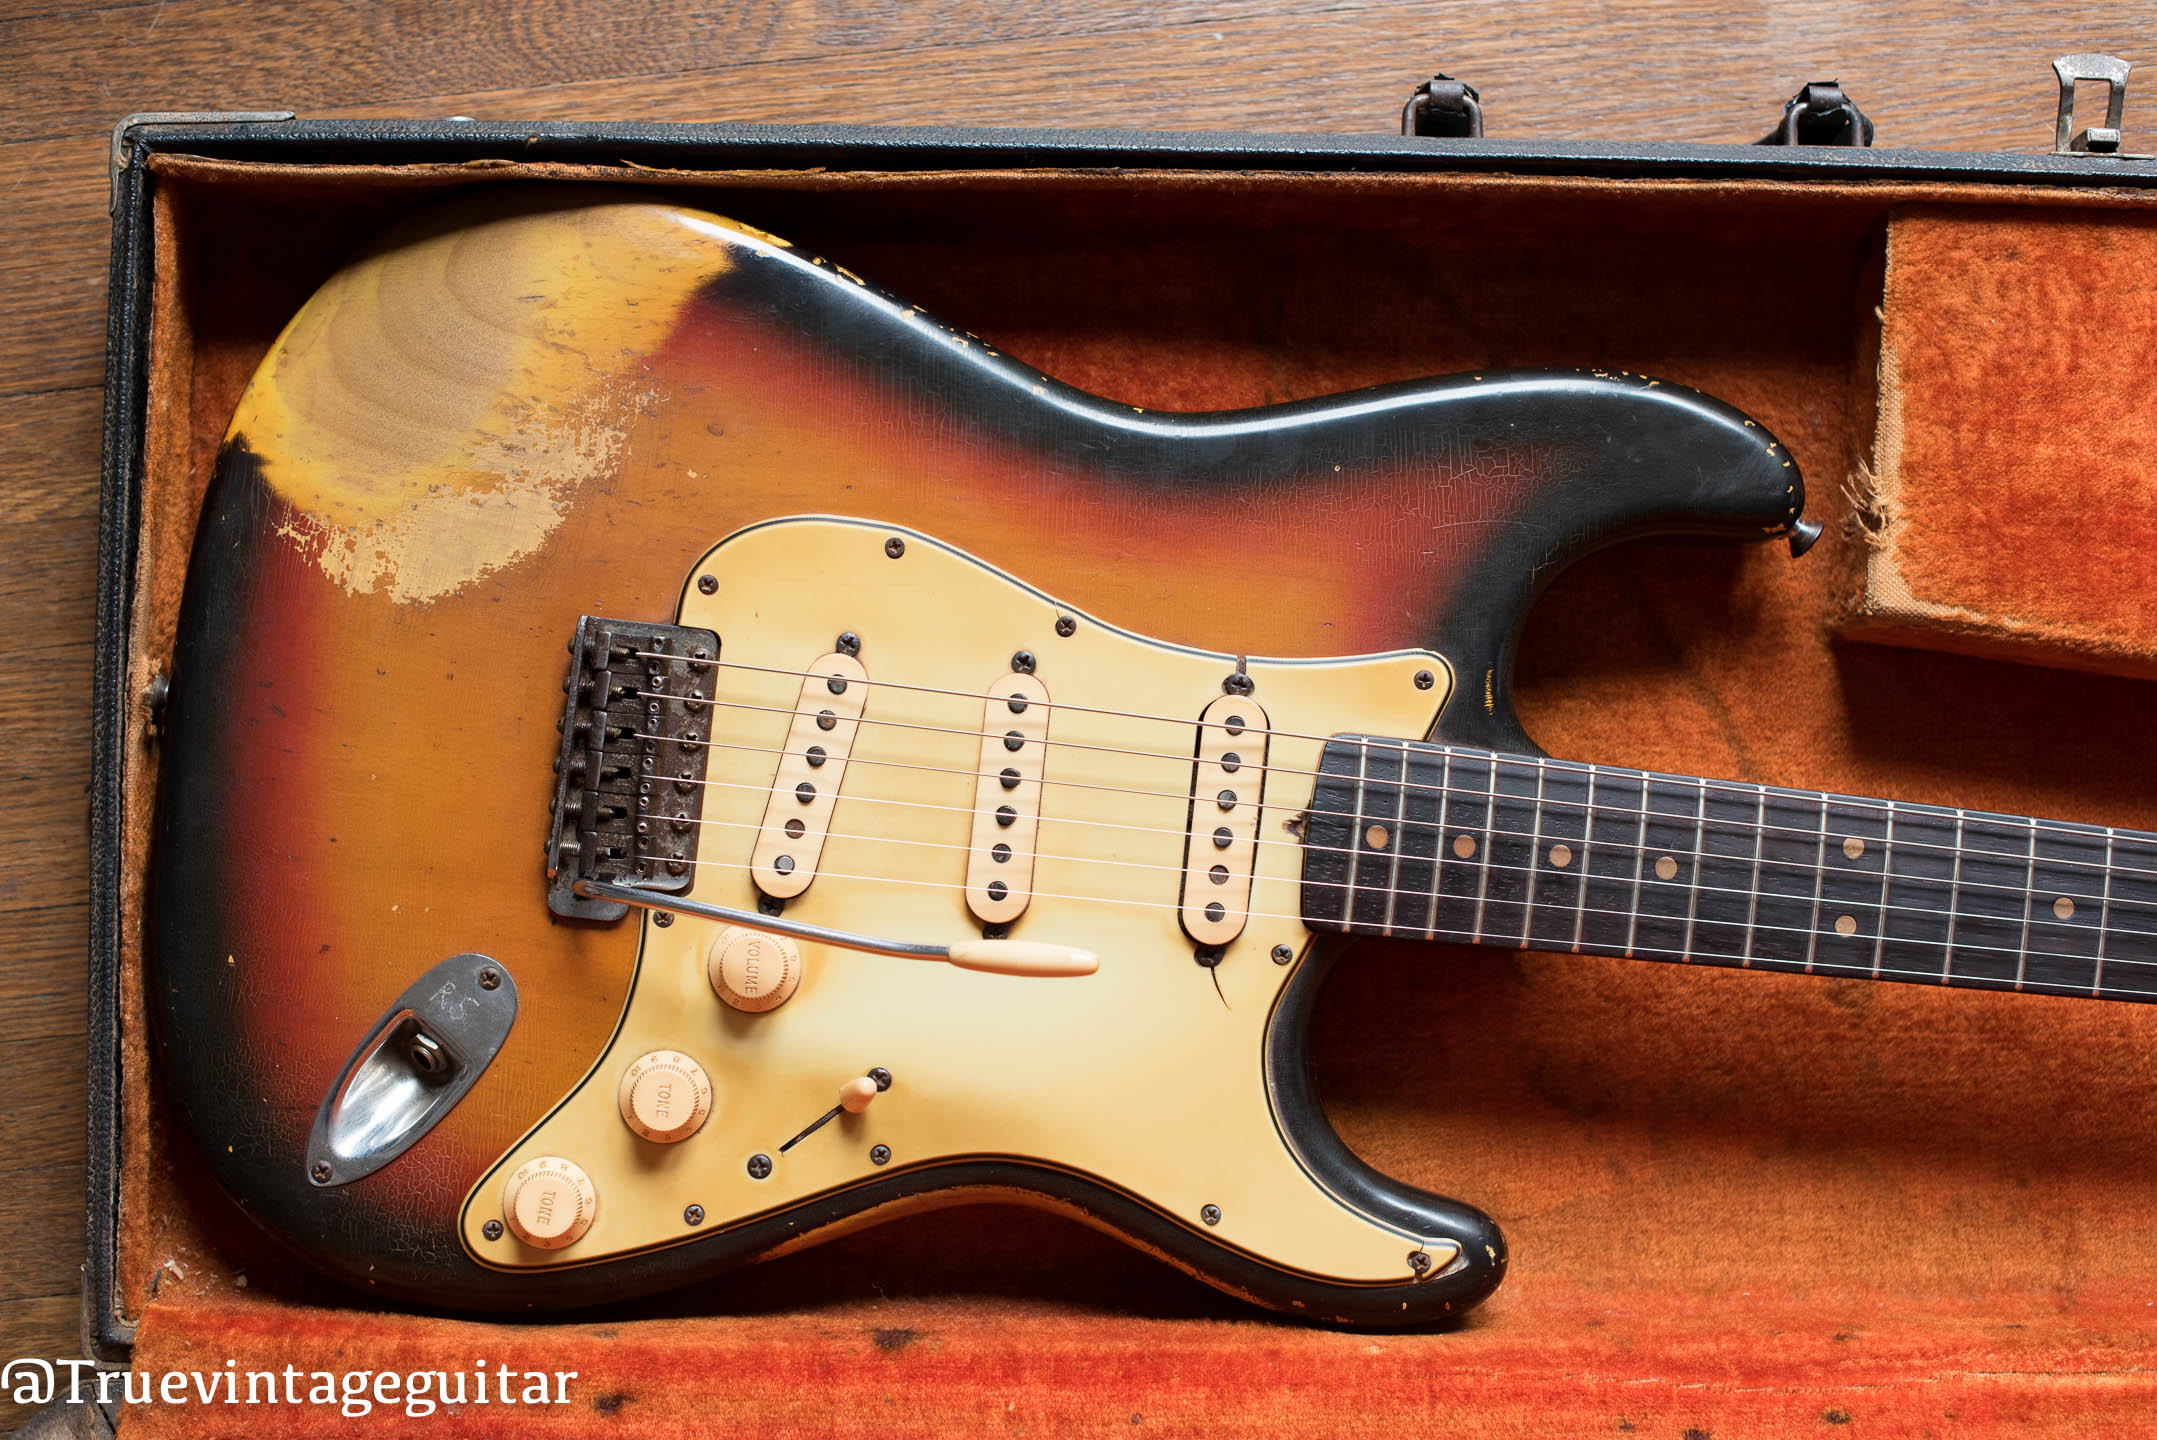 Vintage Fender Stratocaster electric guitar